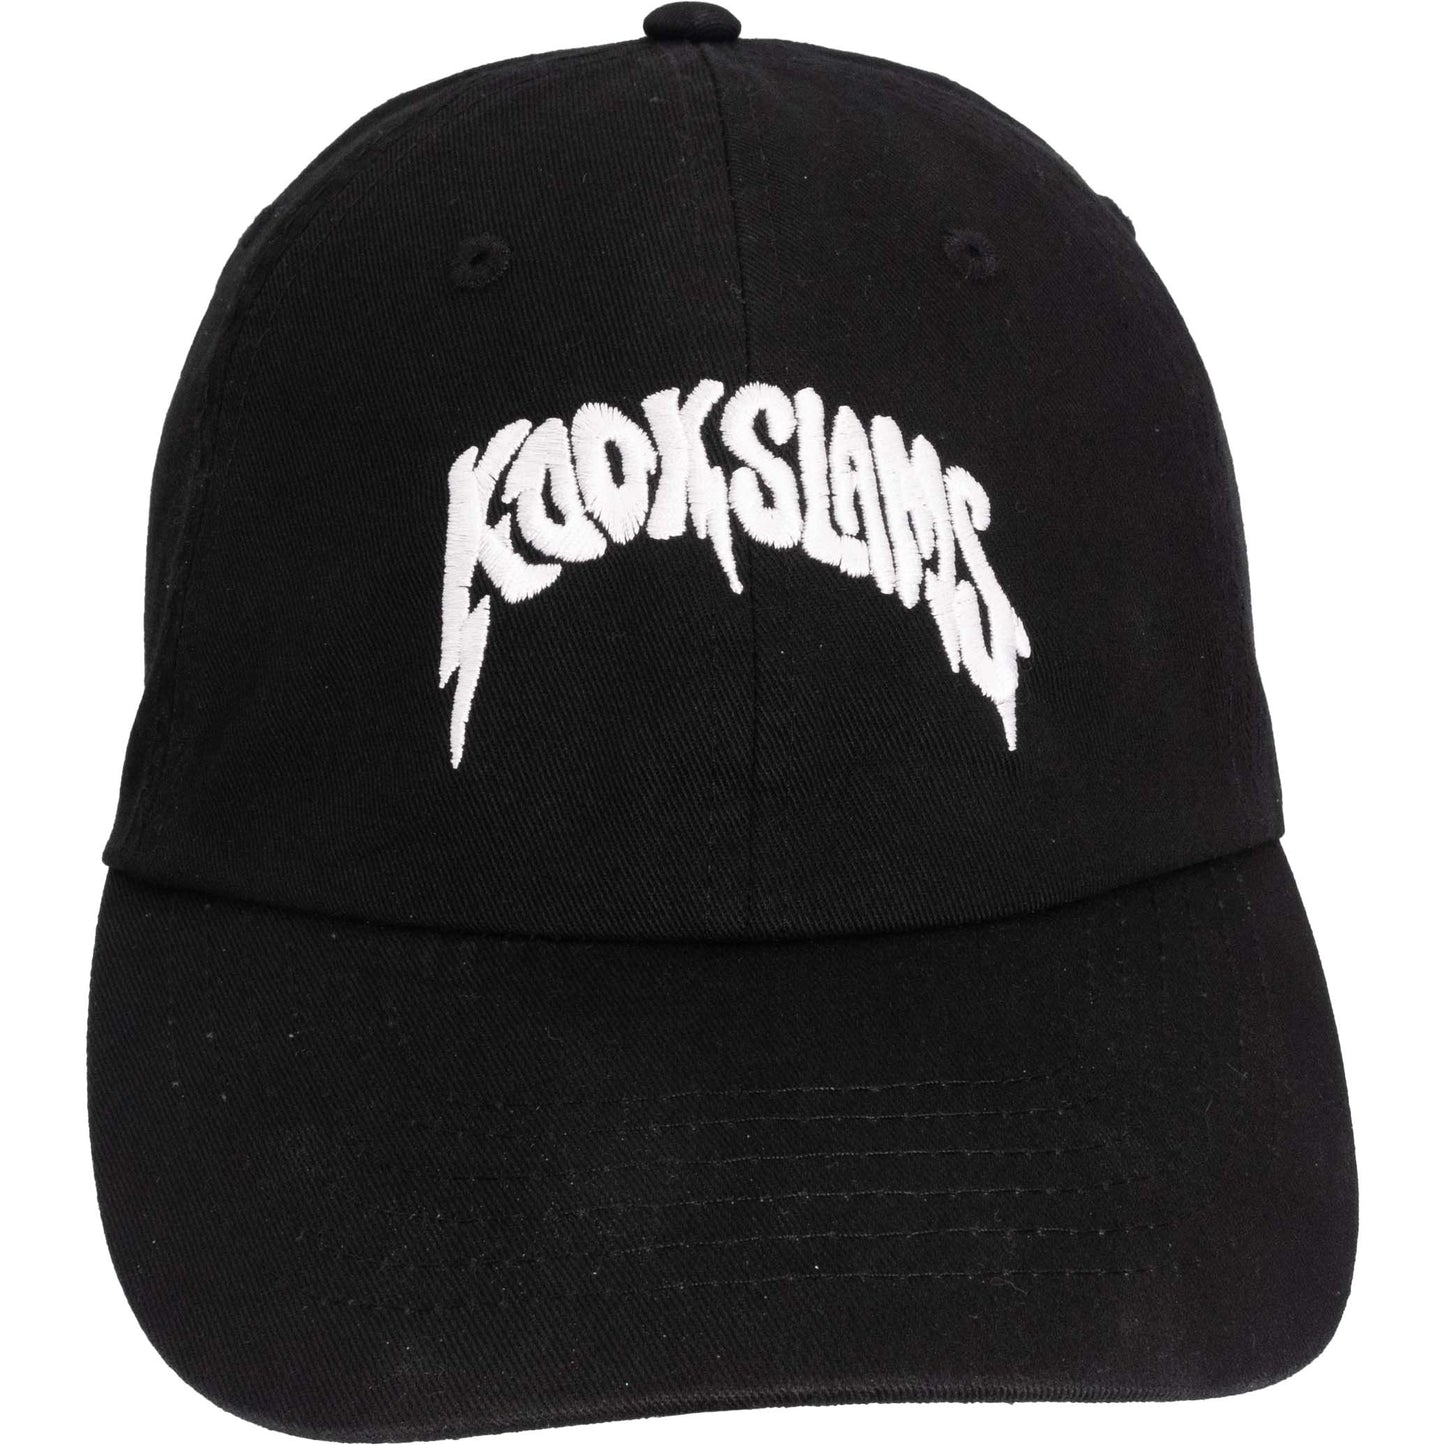 Kookslams Is Metal Hat